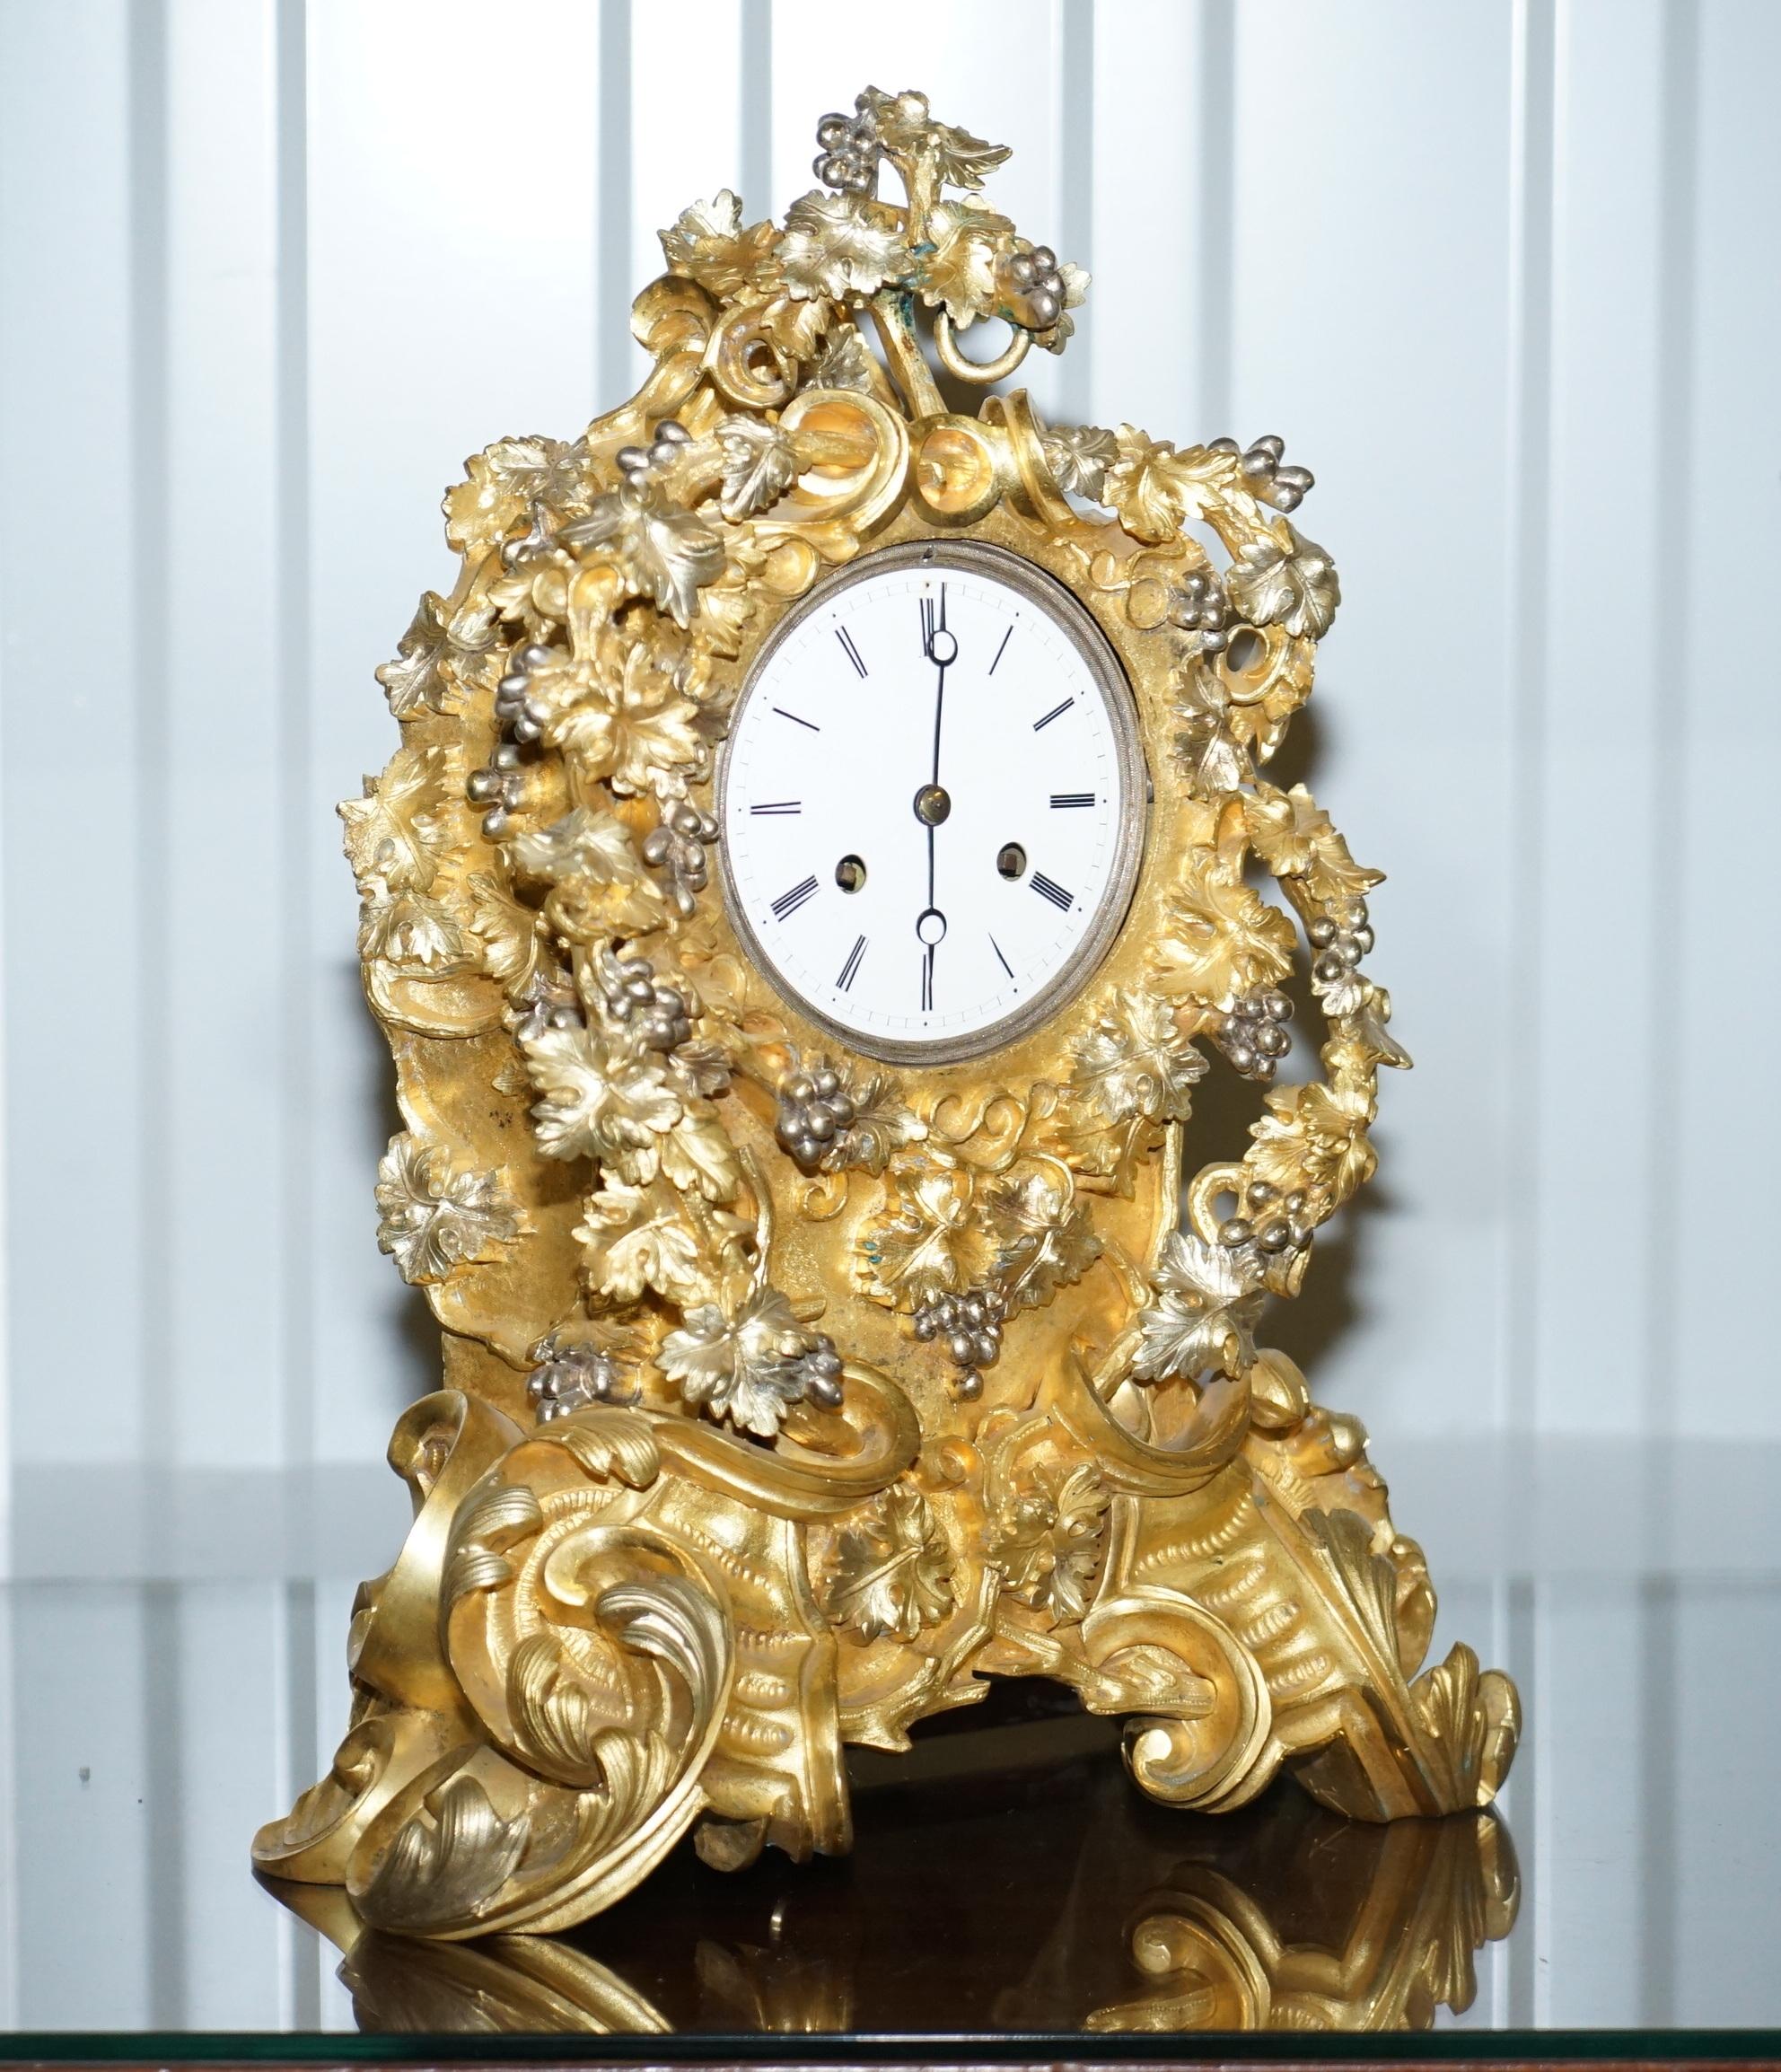 Nous sommes ravis d'offrir à la vente cette belle horloge de cheminée en bronze doré, fabriquée à la main en France vers 1860, très décorative

Il s'agit d'une horloge de cheminée très lourde, magnifiquement moulée, avec un cadre orné, décorée de